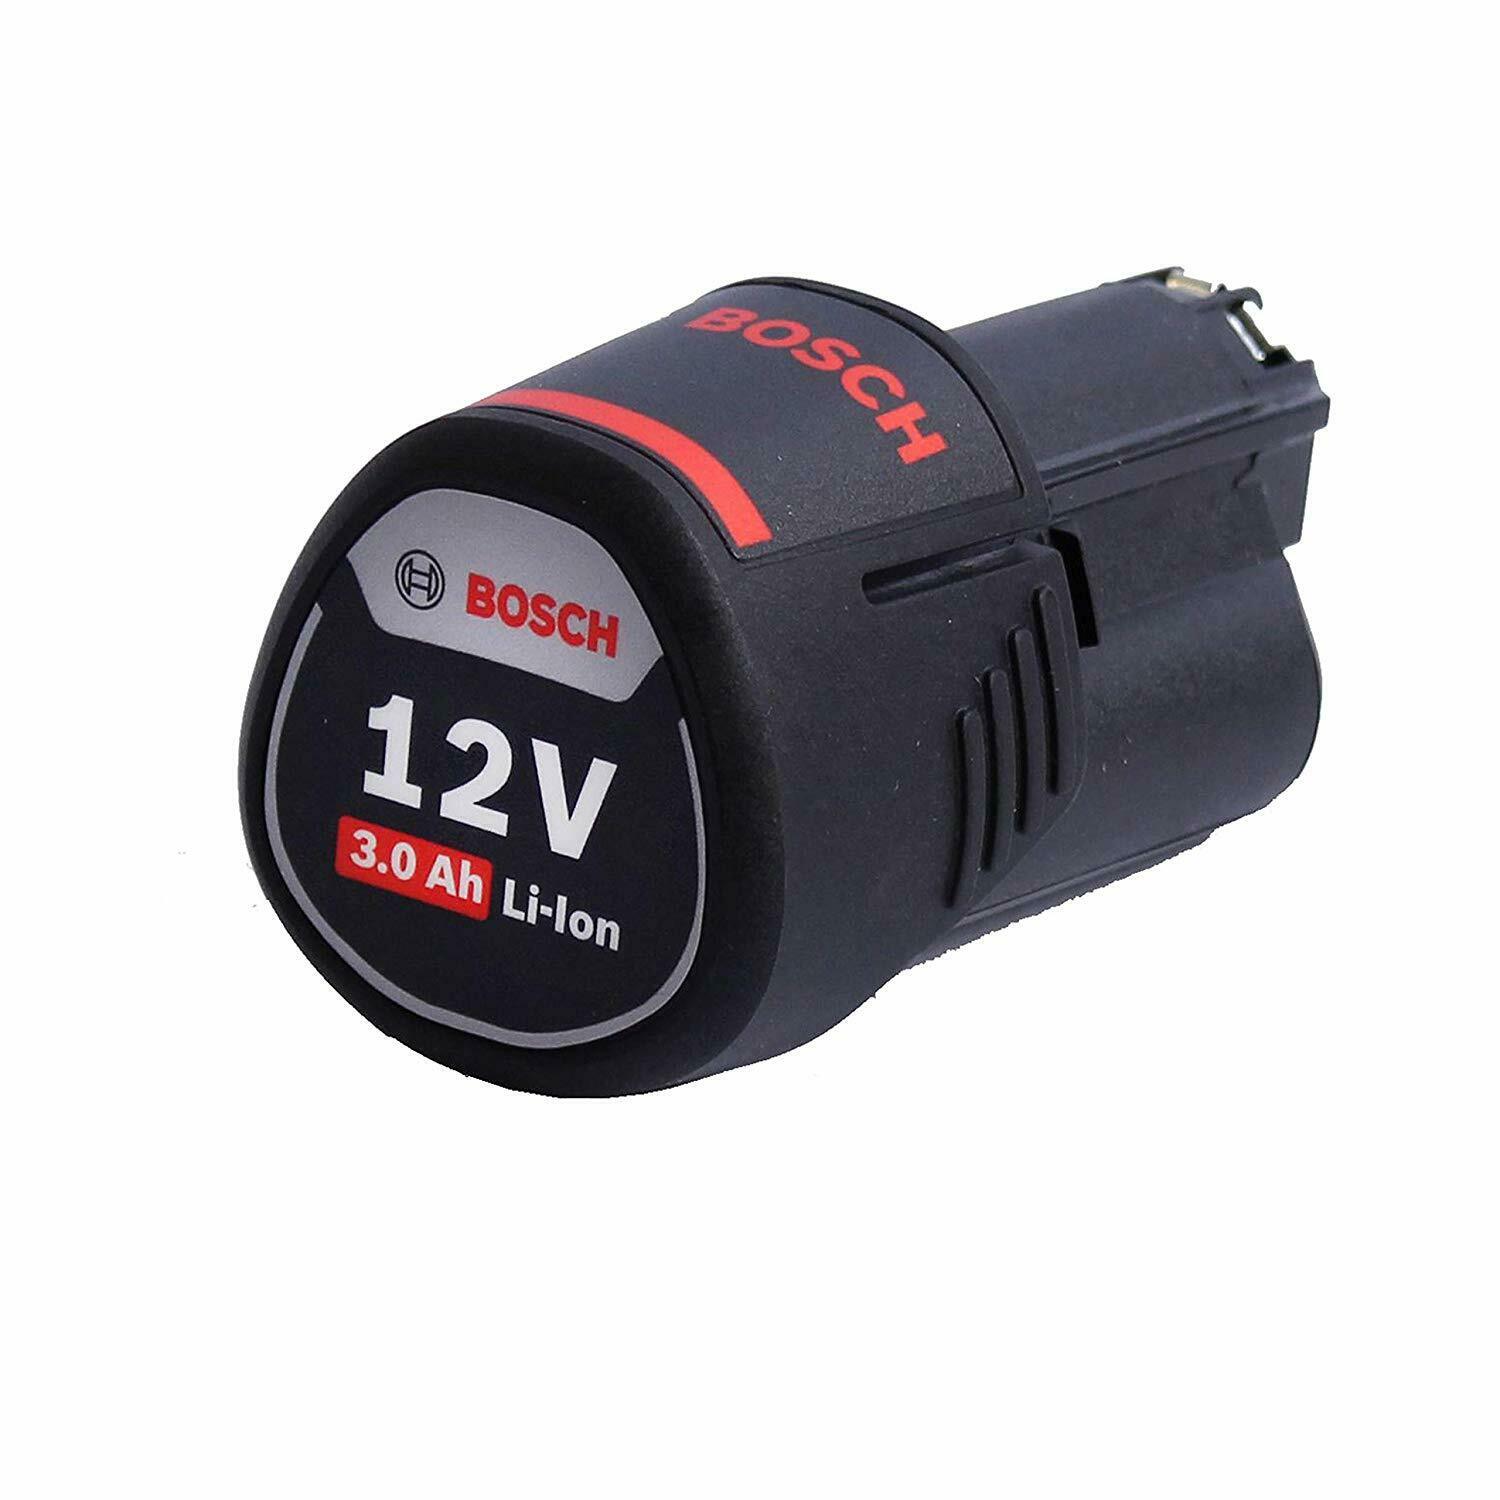 Аккумулятор 12v 2.0 ah. Bosch аккумулятор li-ion 12 в 3.0 Ач 1600a00x79. Аккумулятор Bosch 12v. Аккумулятор Bosch (1600a00x79). Аккумулятор Bosch 12v 2.0Ah.